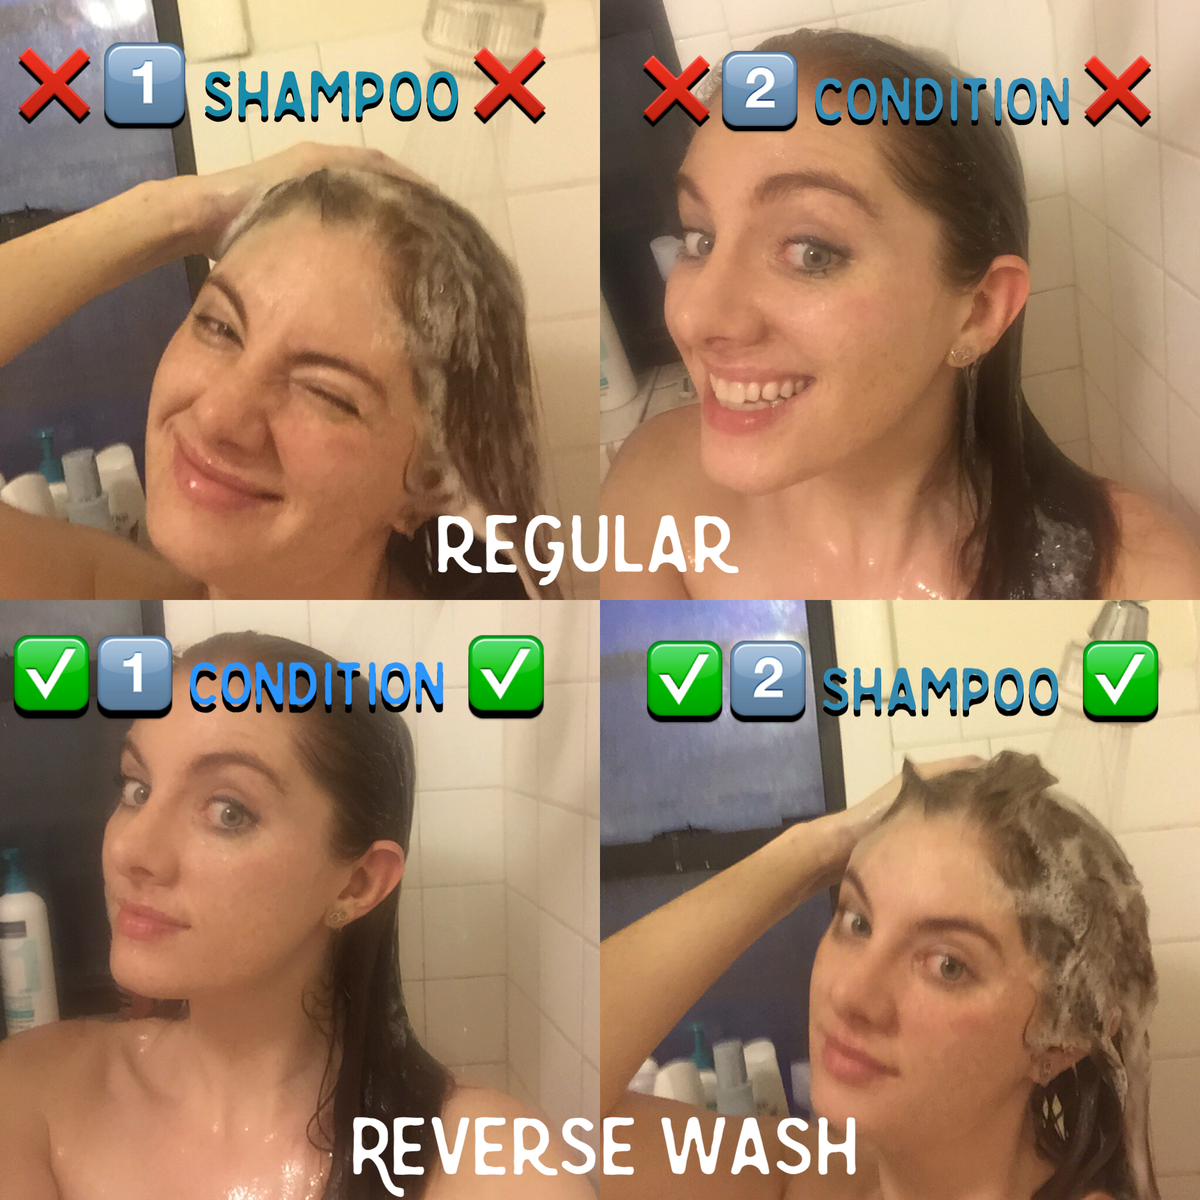 La méthode de lavage inversé des cheveux fonctionne-t-elle vraiment?